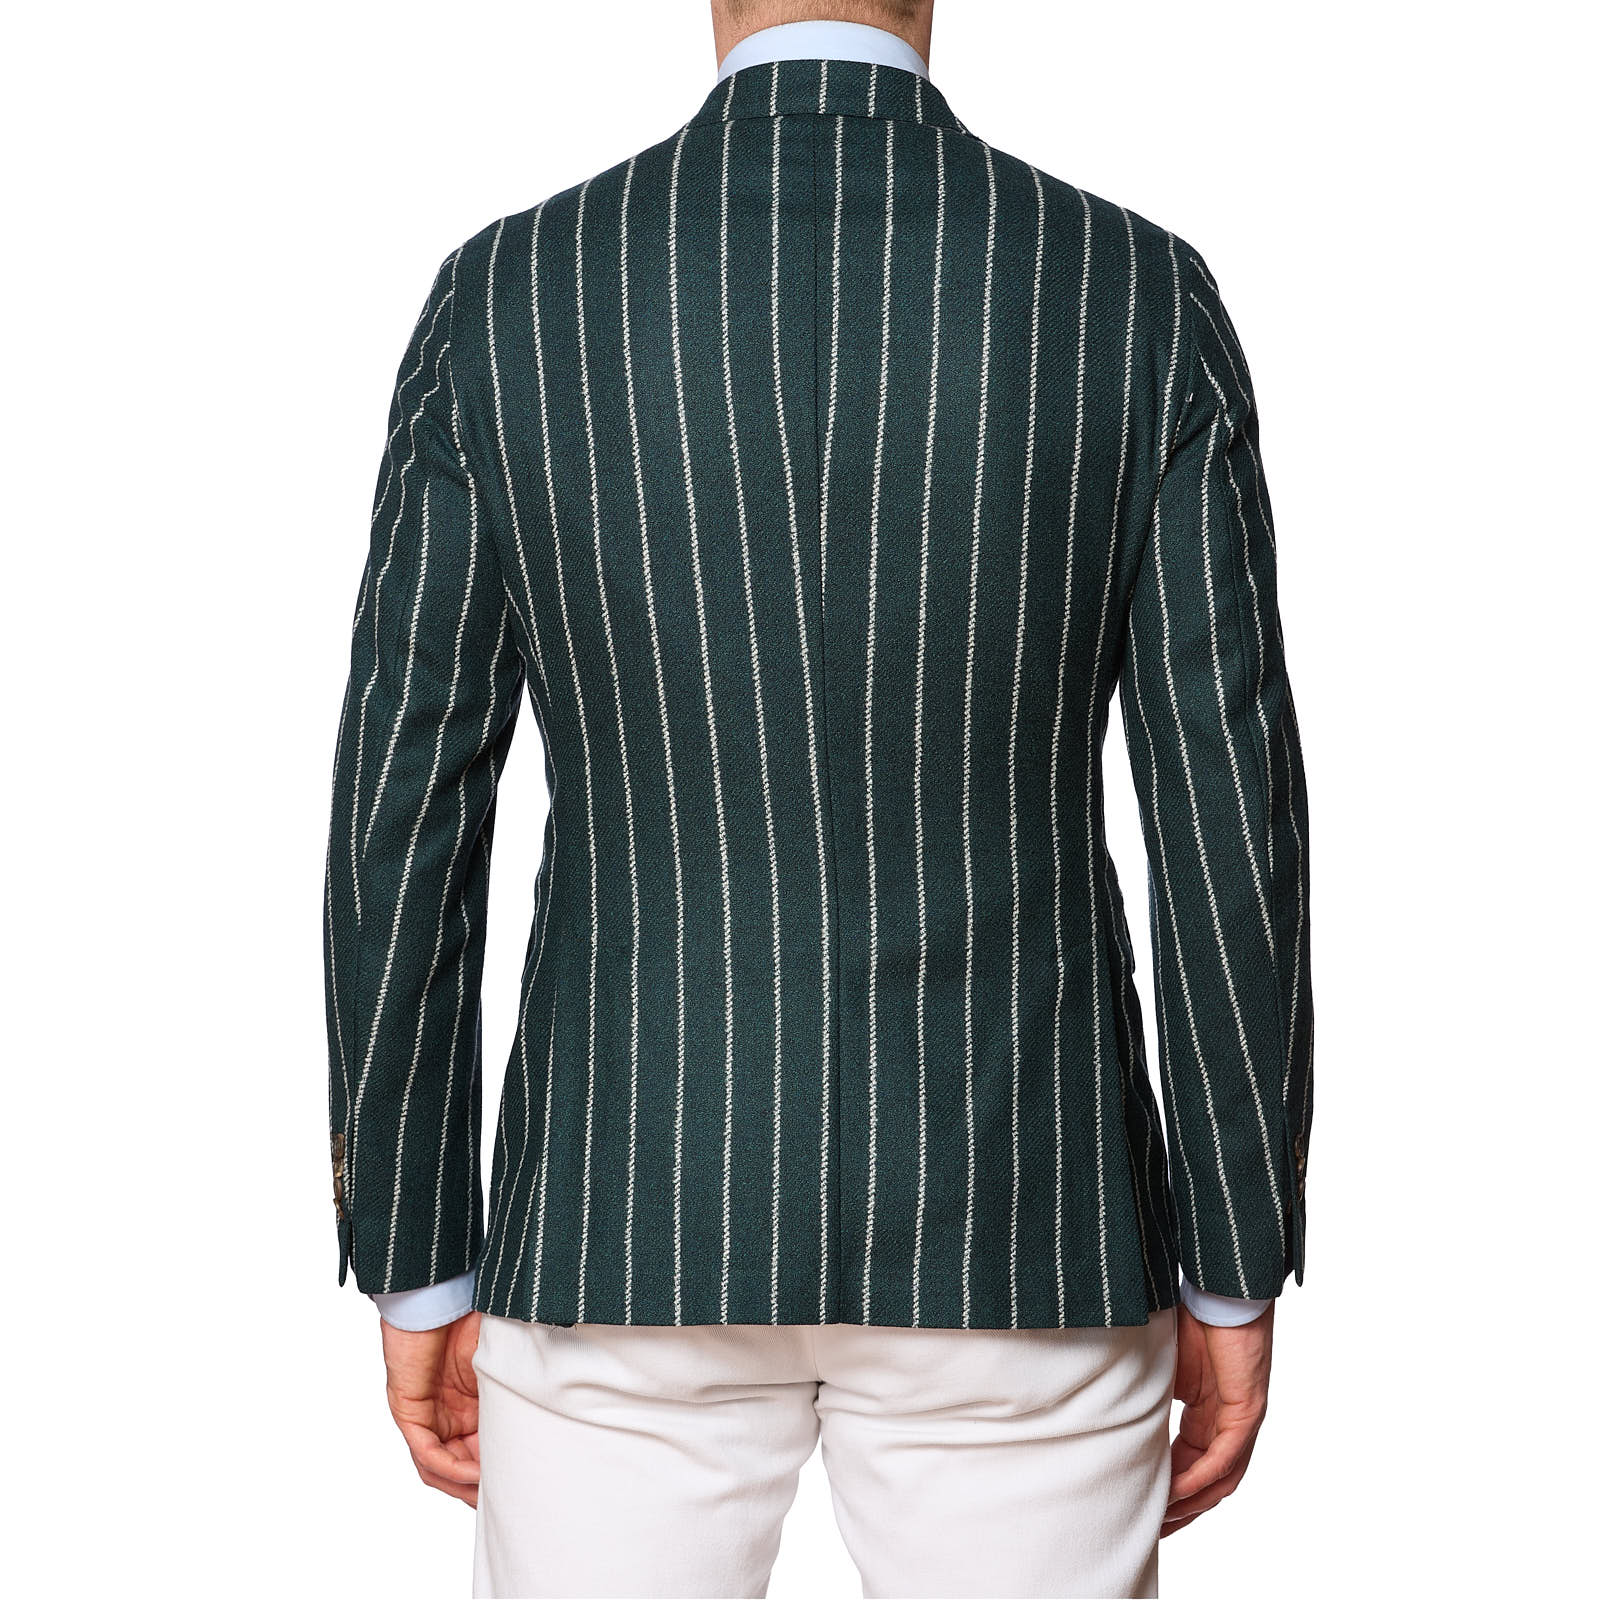 SARTORIA PARTENOPEA Green Striped Wool Jacket EU 48 NEW US 38 Current Model